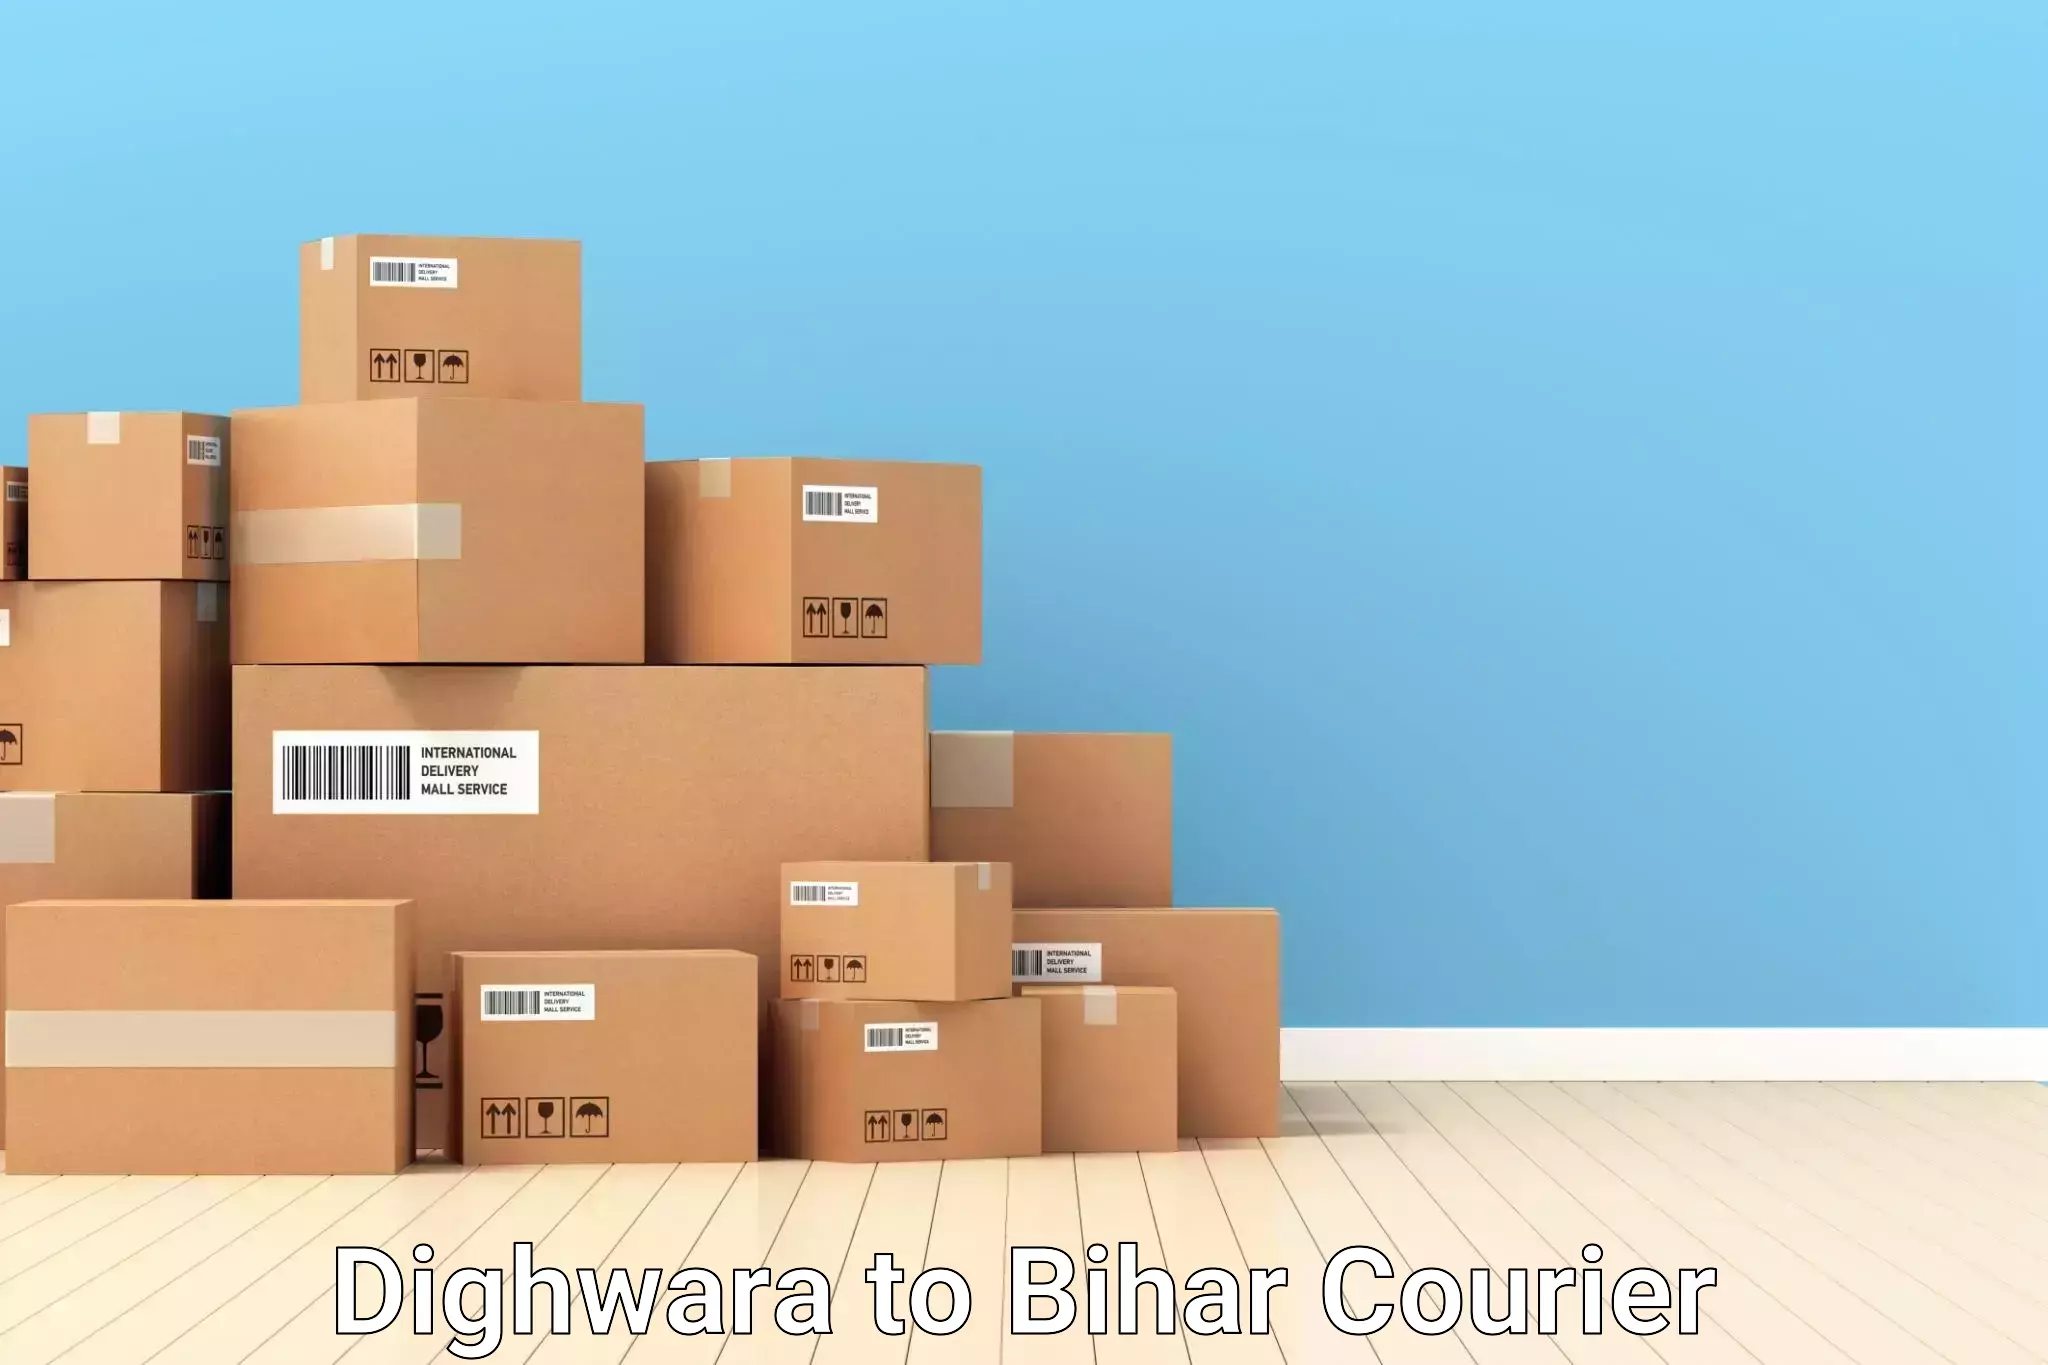 Door-to-door baggage service Dighwara to Bihar